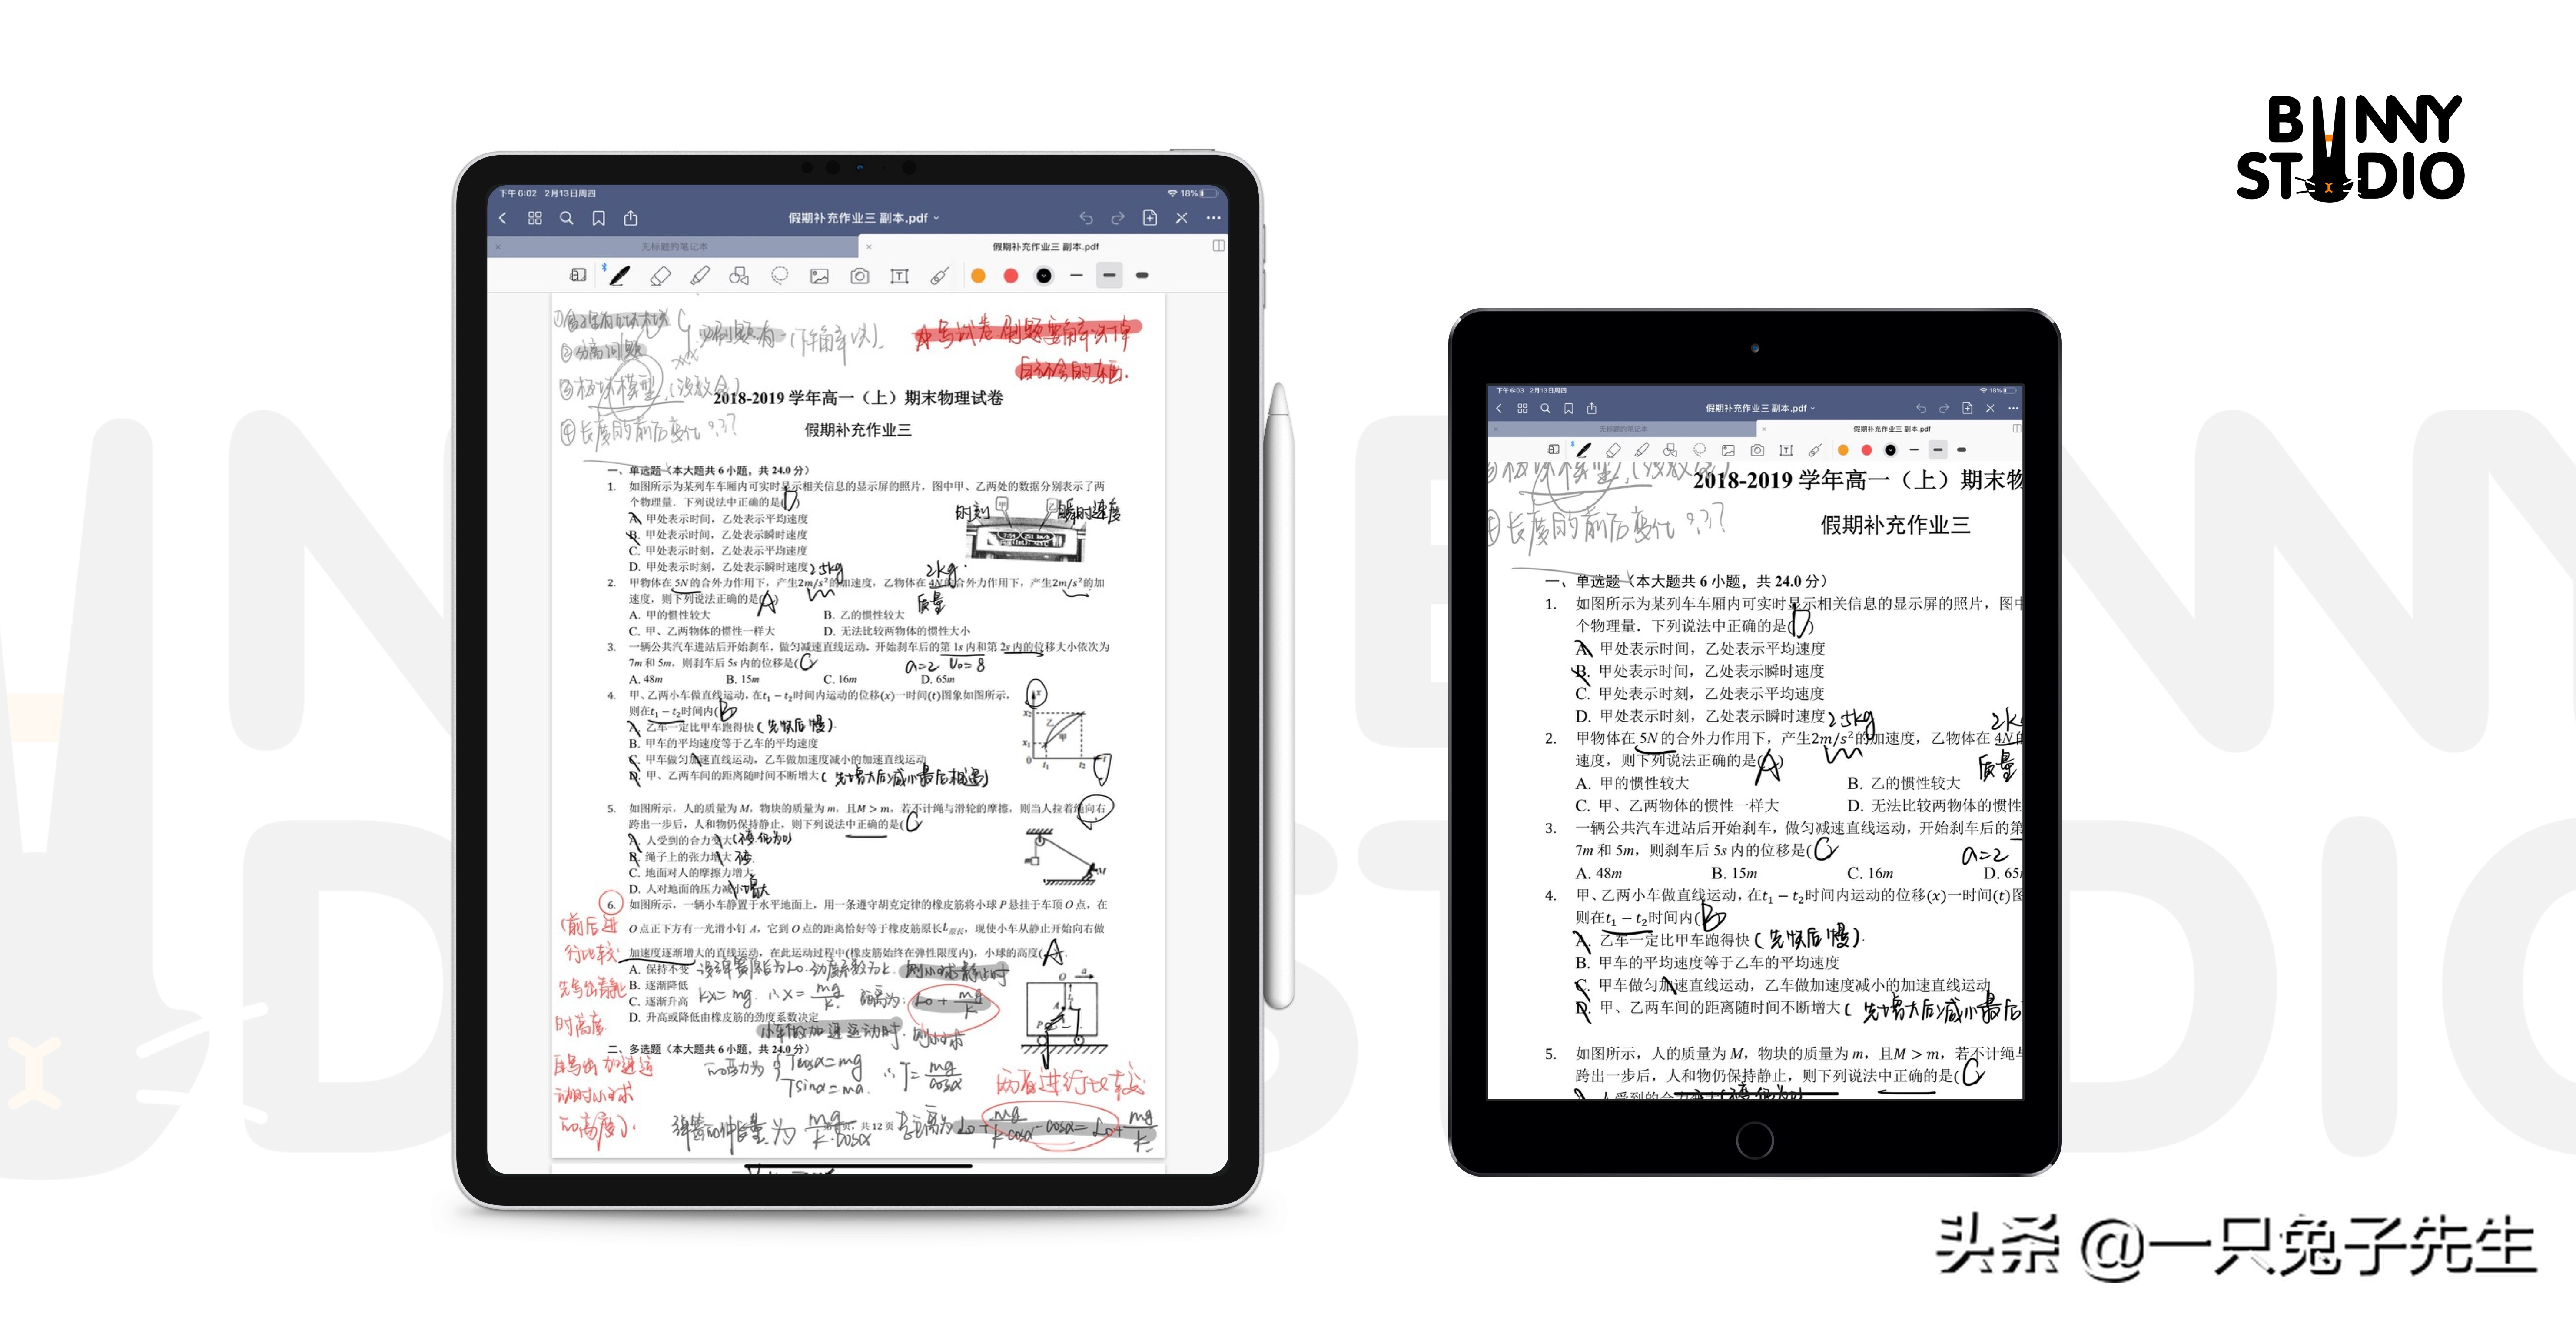 全面屏iPad Mini—小屏幕的未来